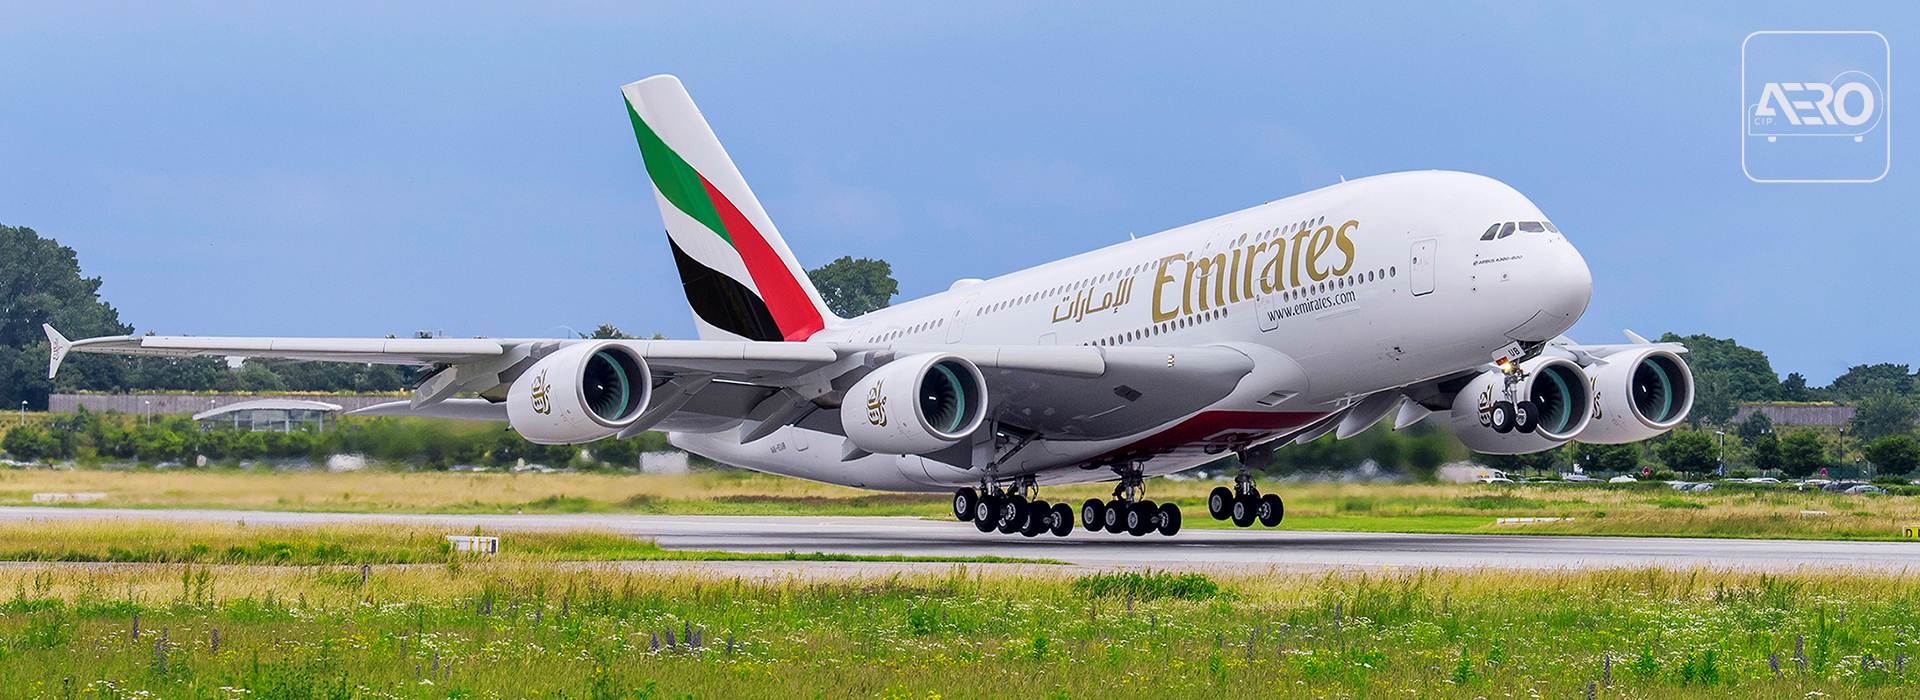 اسلایدر هواپیمایی امارات